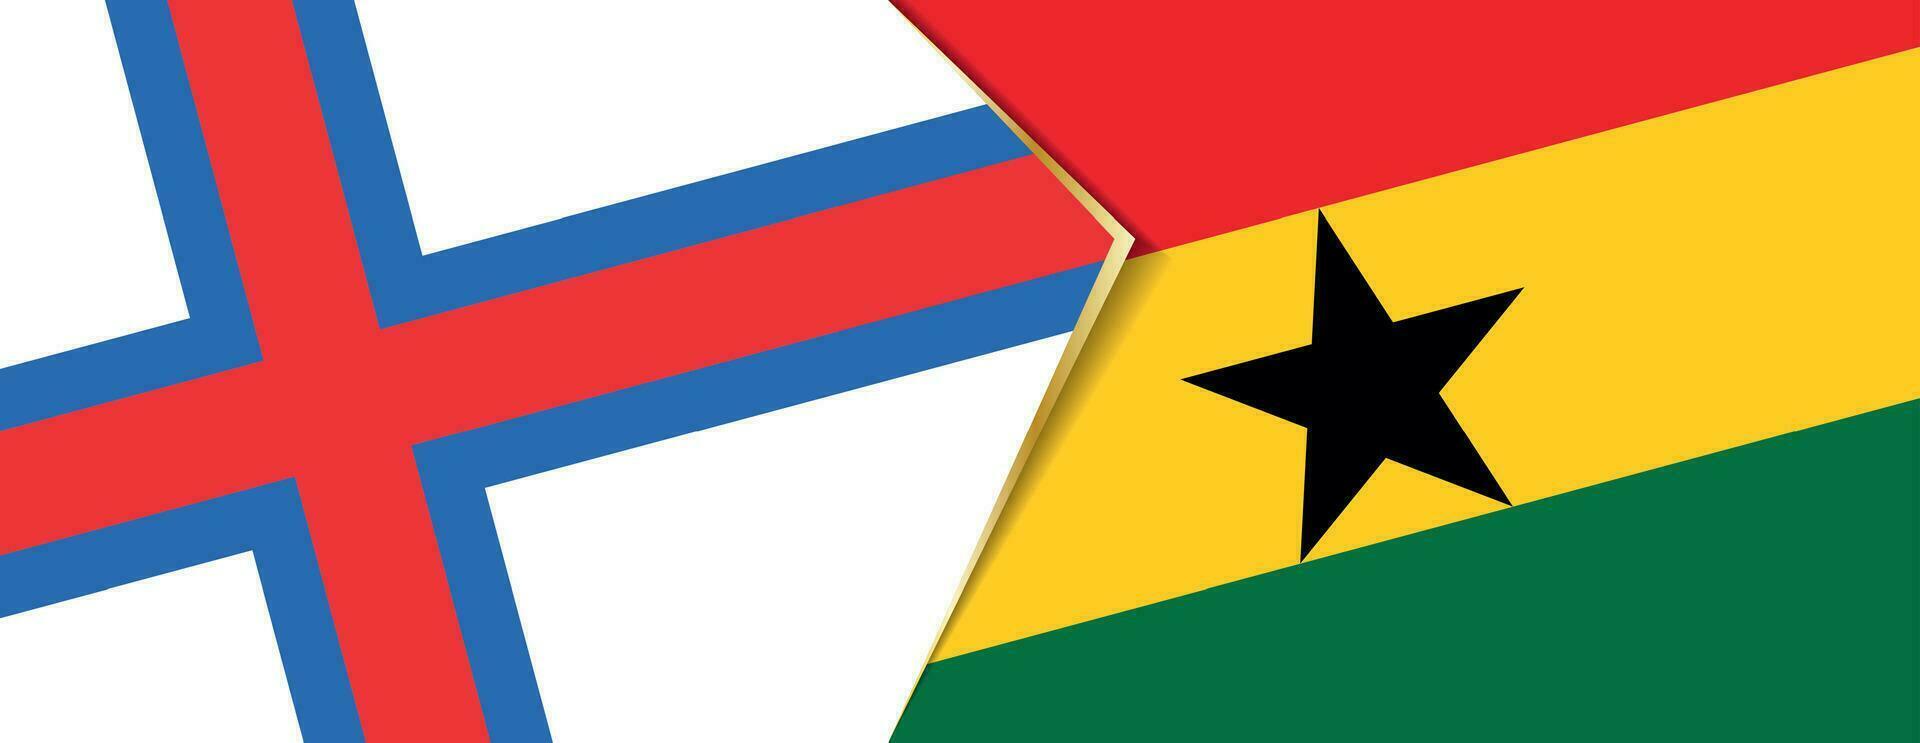 faroe öar och ghana flaggor, två vektor flaggor.